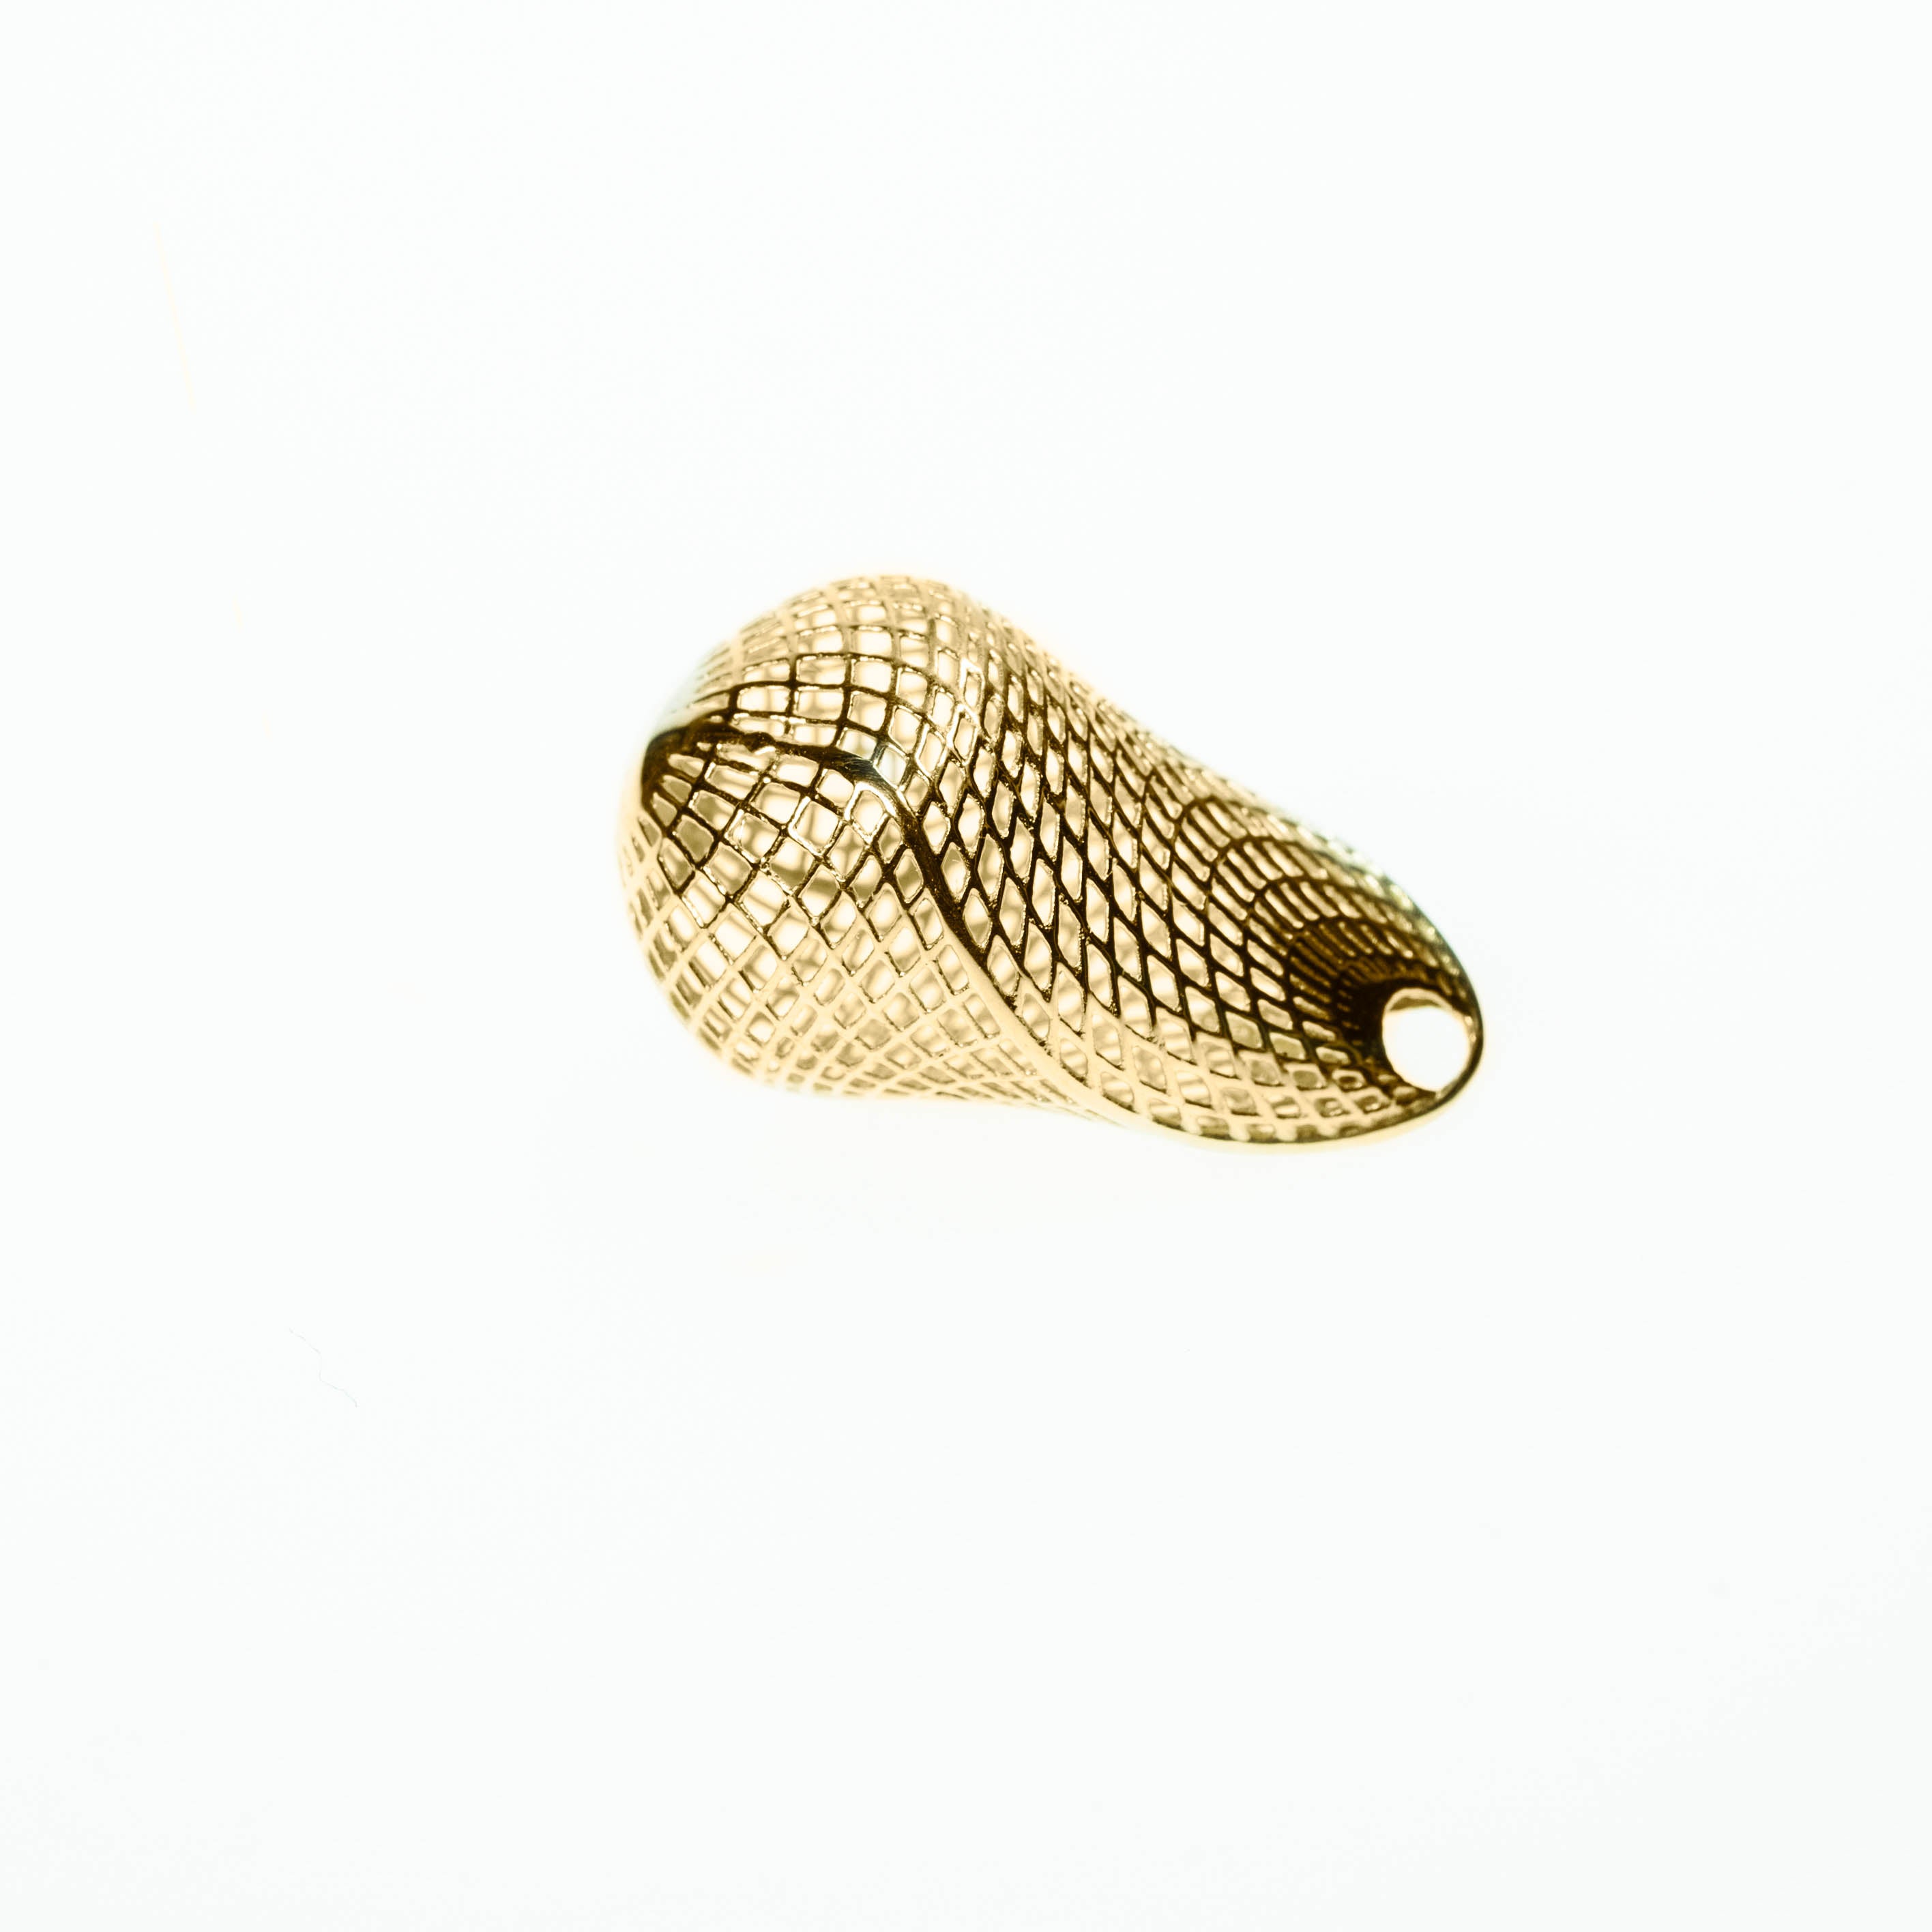 18k yellow gold - Unique Contemporary, Statement, basket Pendant